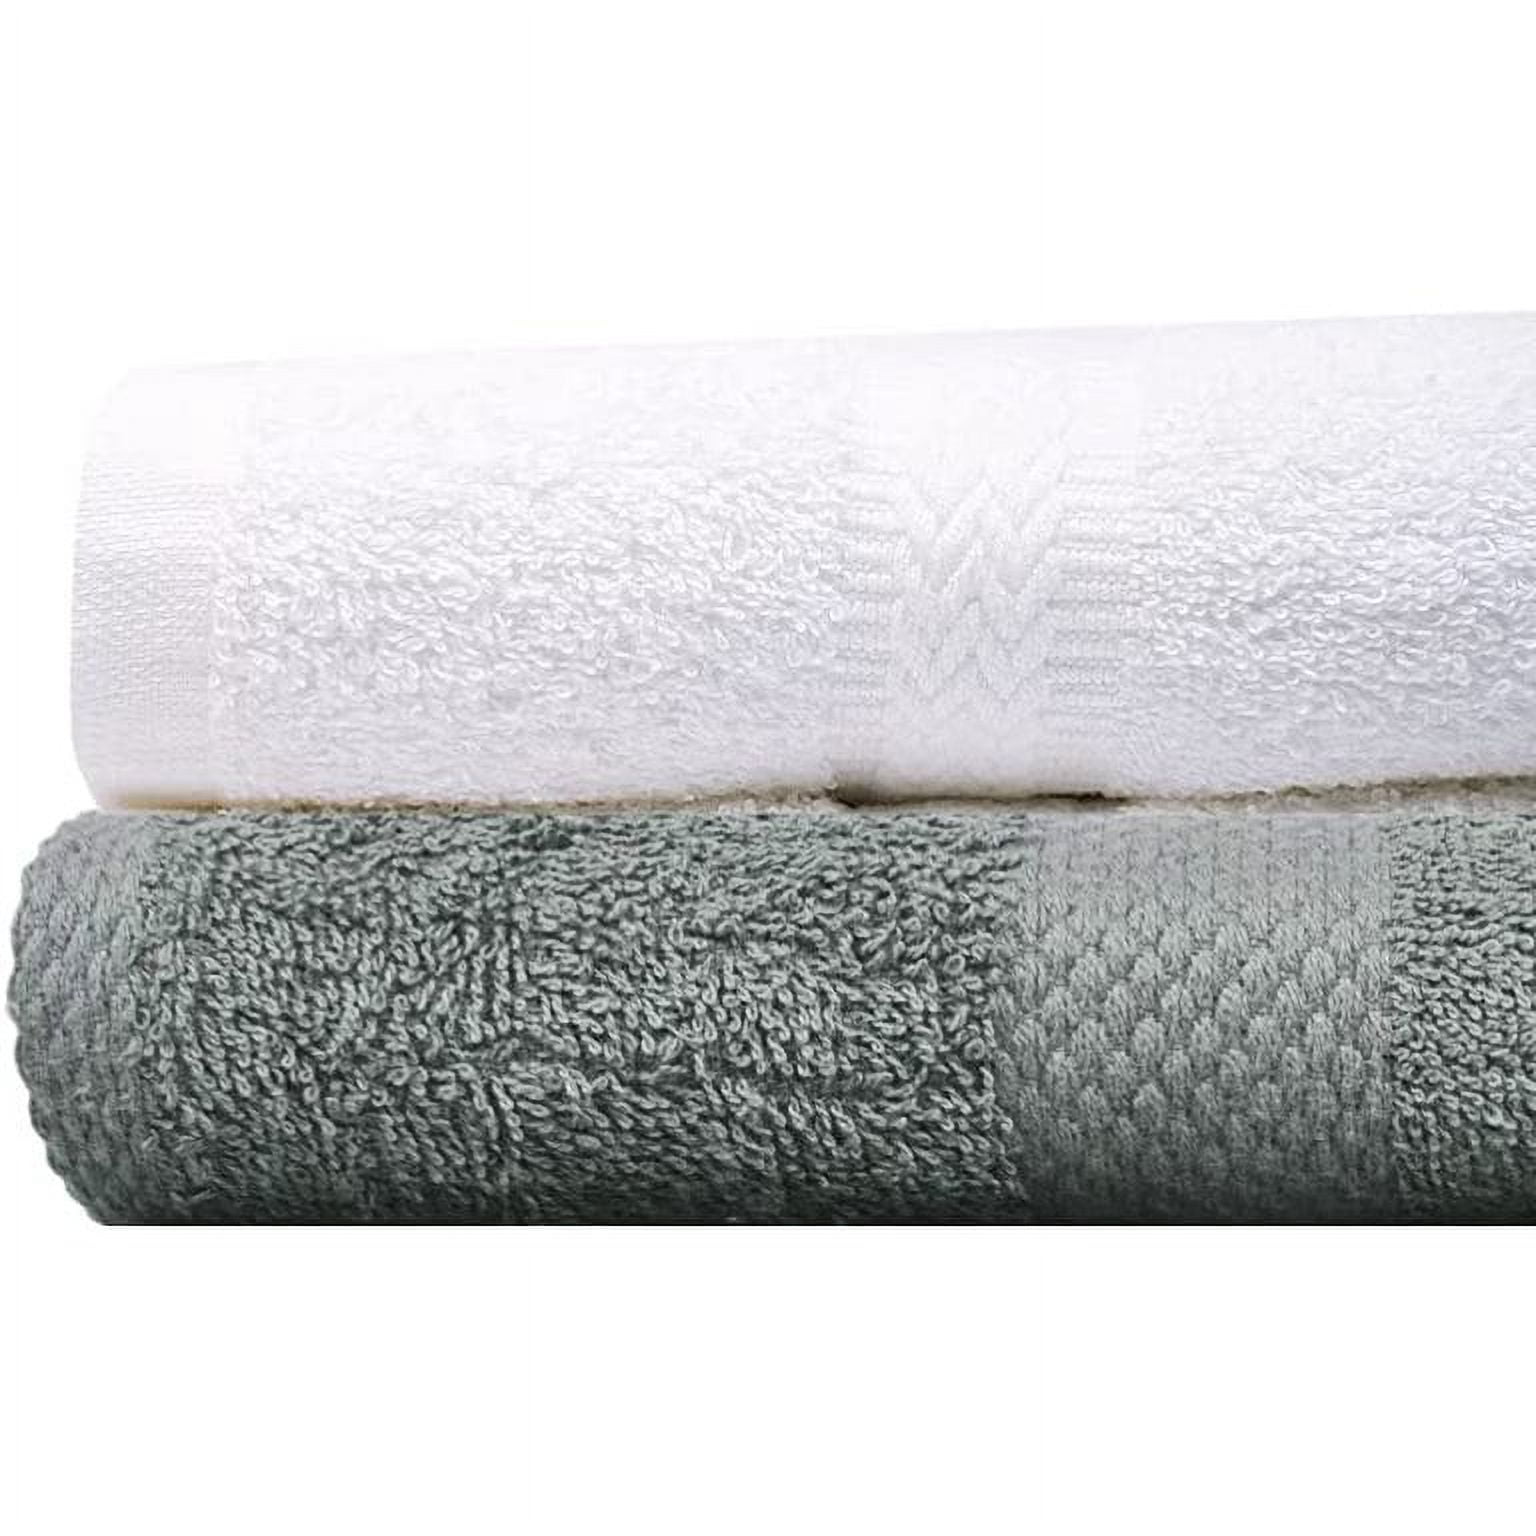 Bath Towel 20x40, 5.50 Lb/Dz, 86/14Polyester, DOUBLE CAM